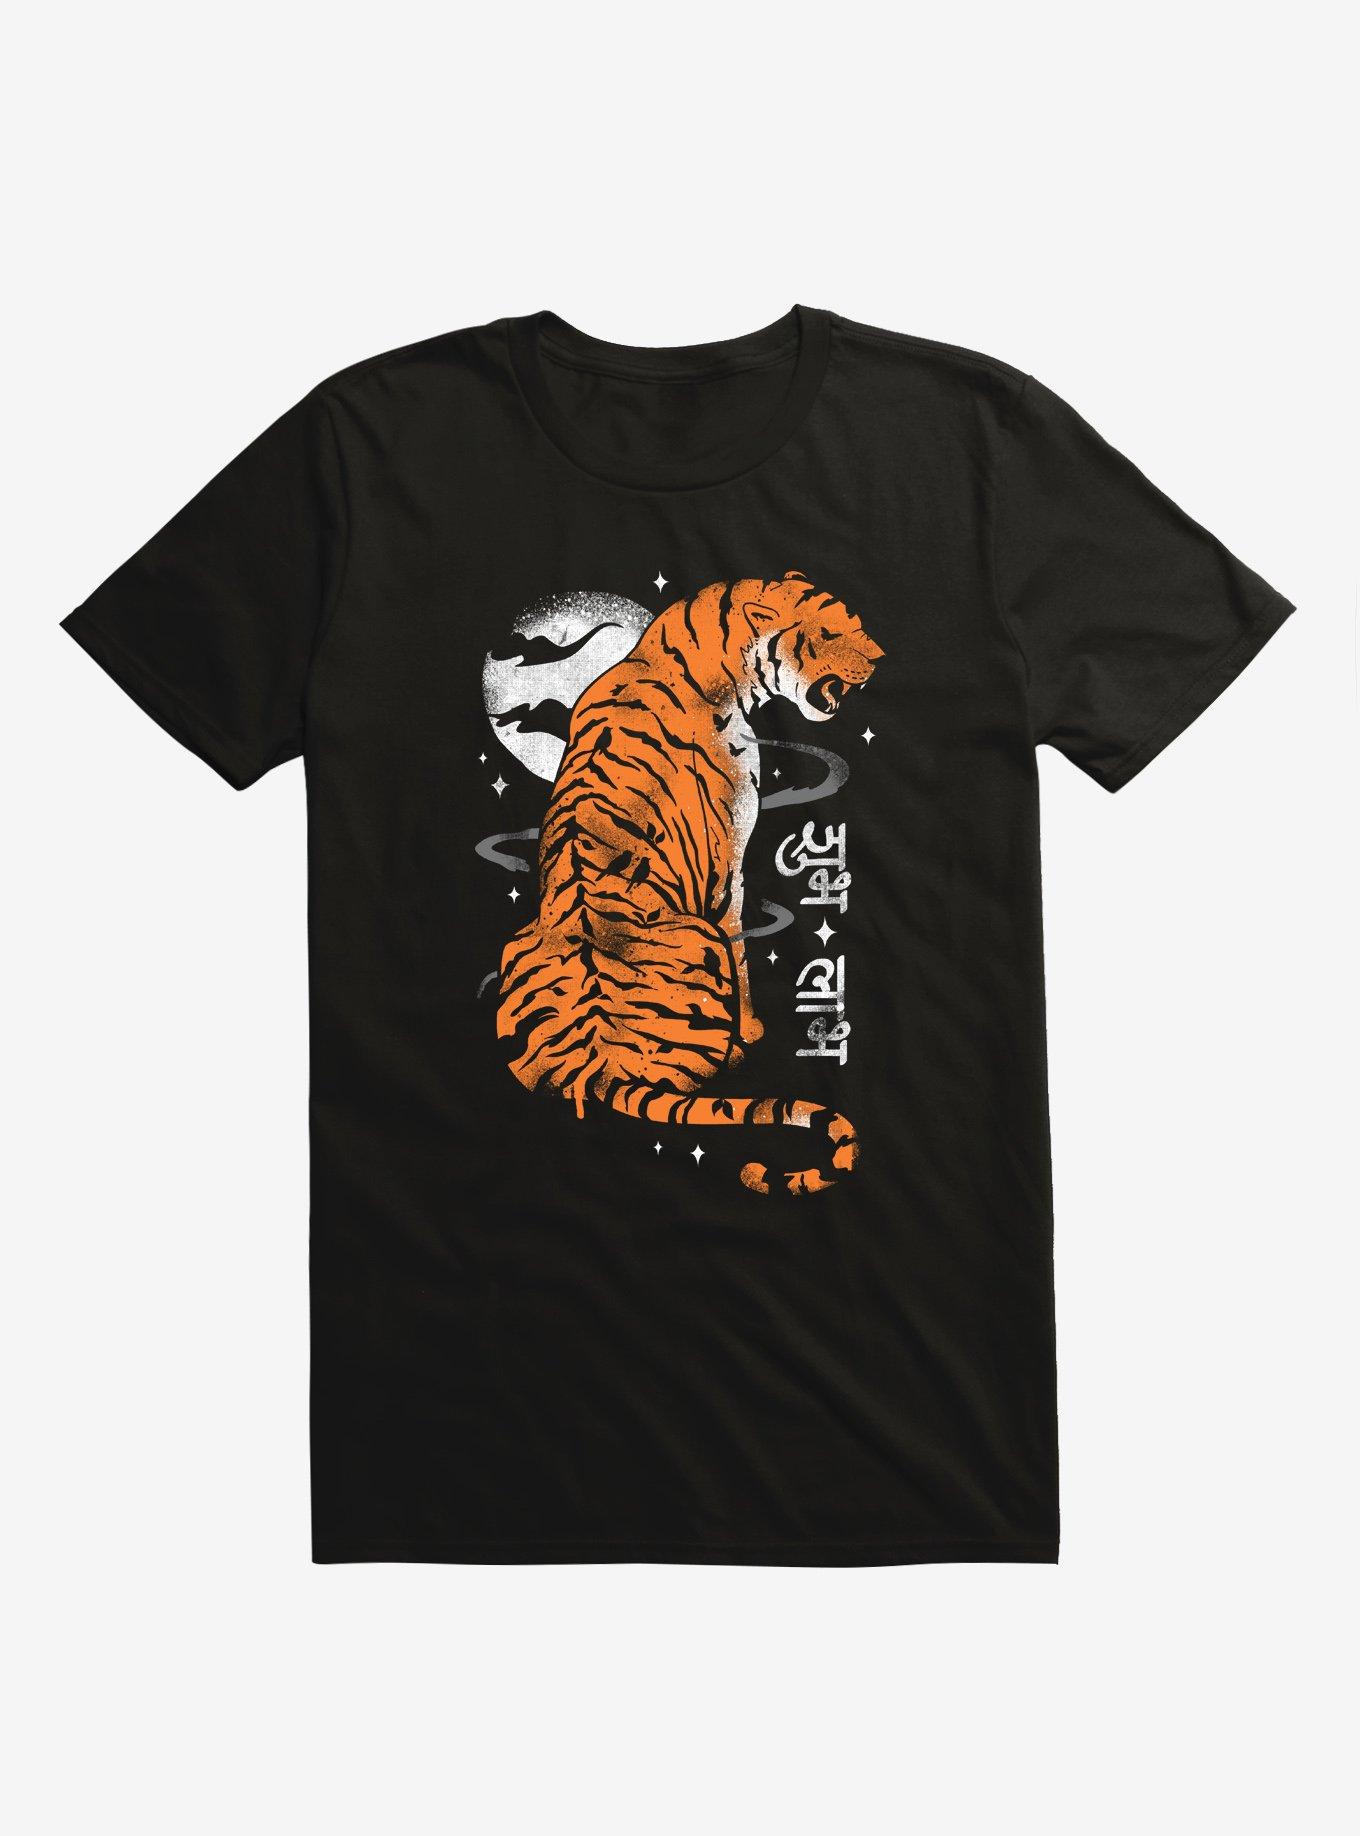 Jewel Of India Tiger Black T-Shirt, BLACK, hi-res